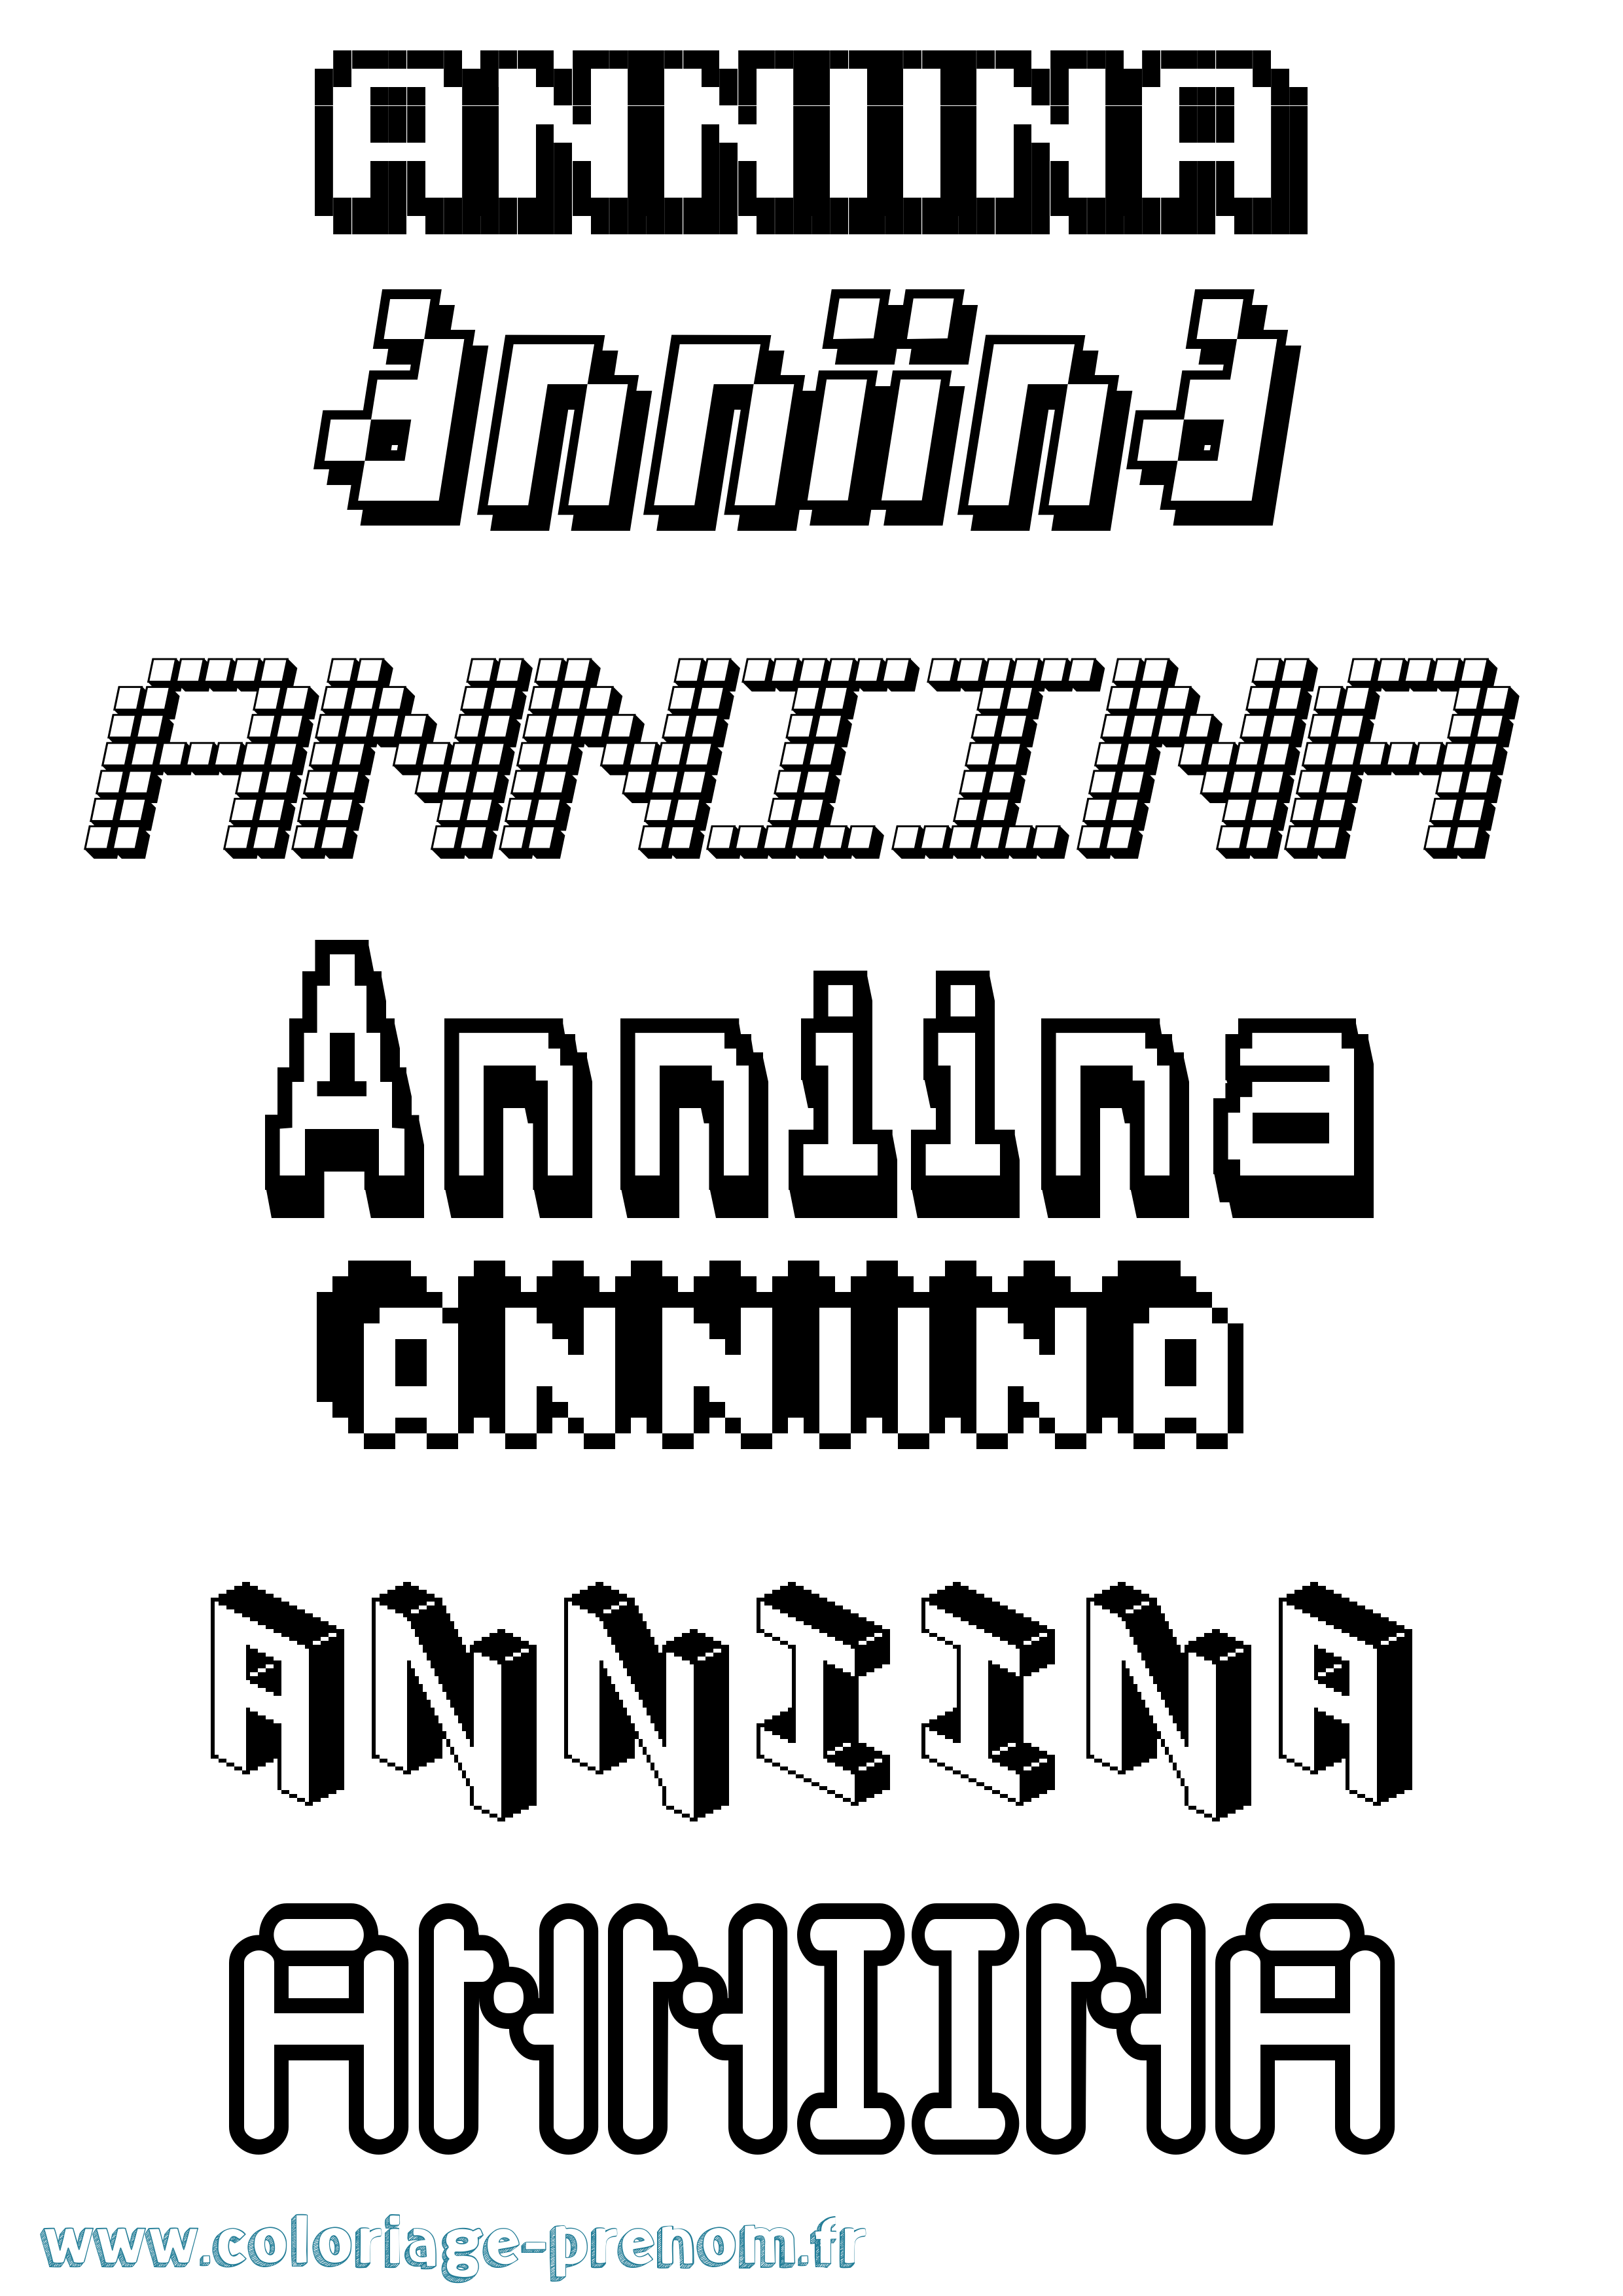 Coloriage prénom Anniina Pixel